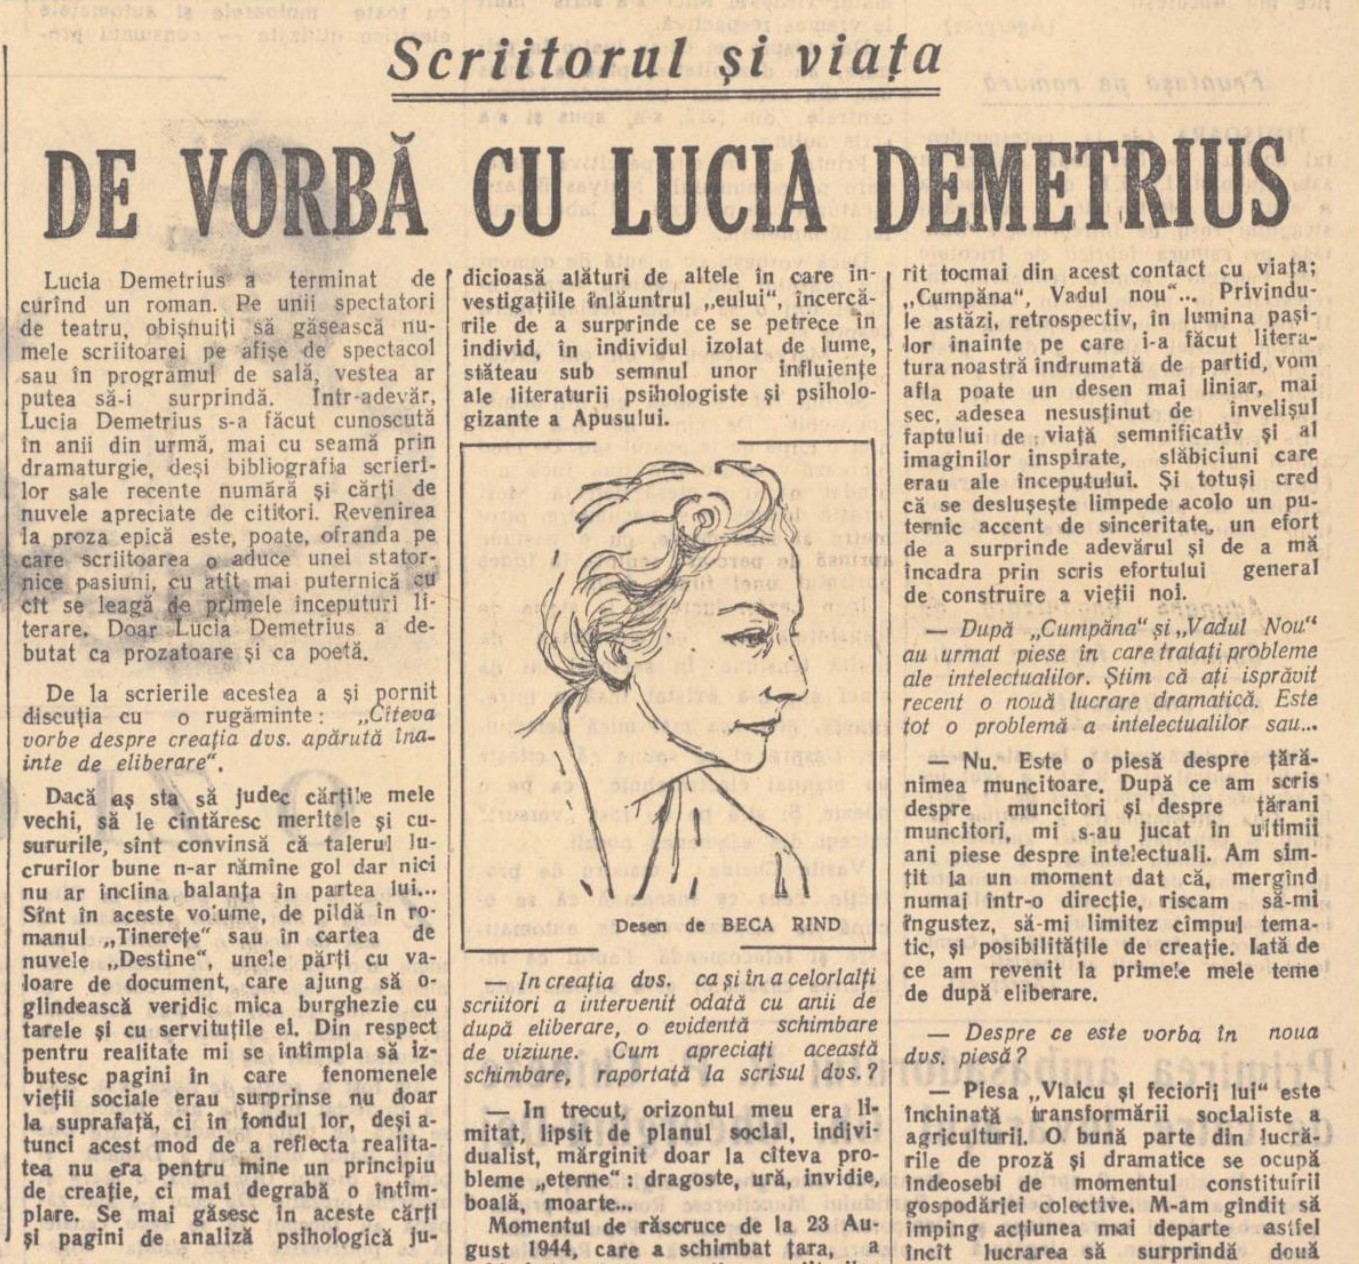 Lucia Demetrius